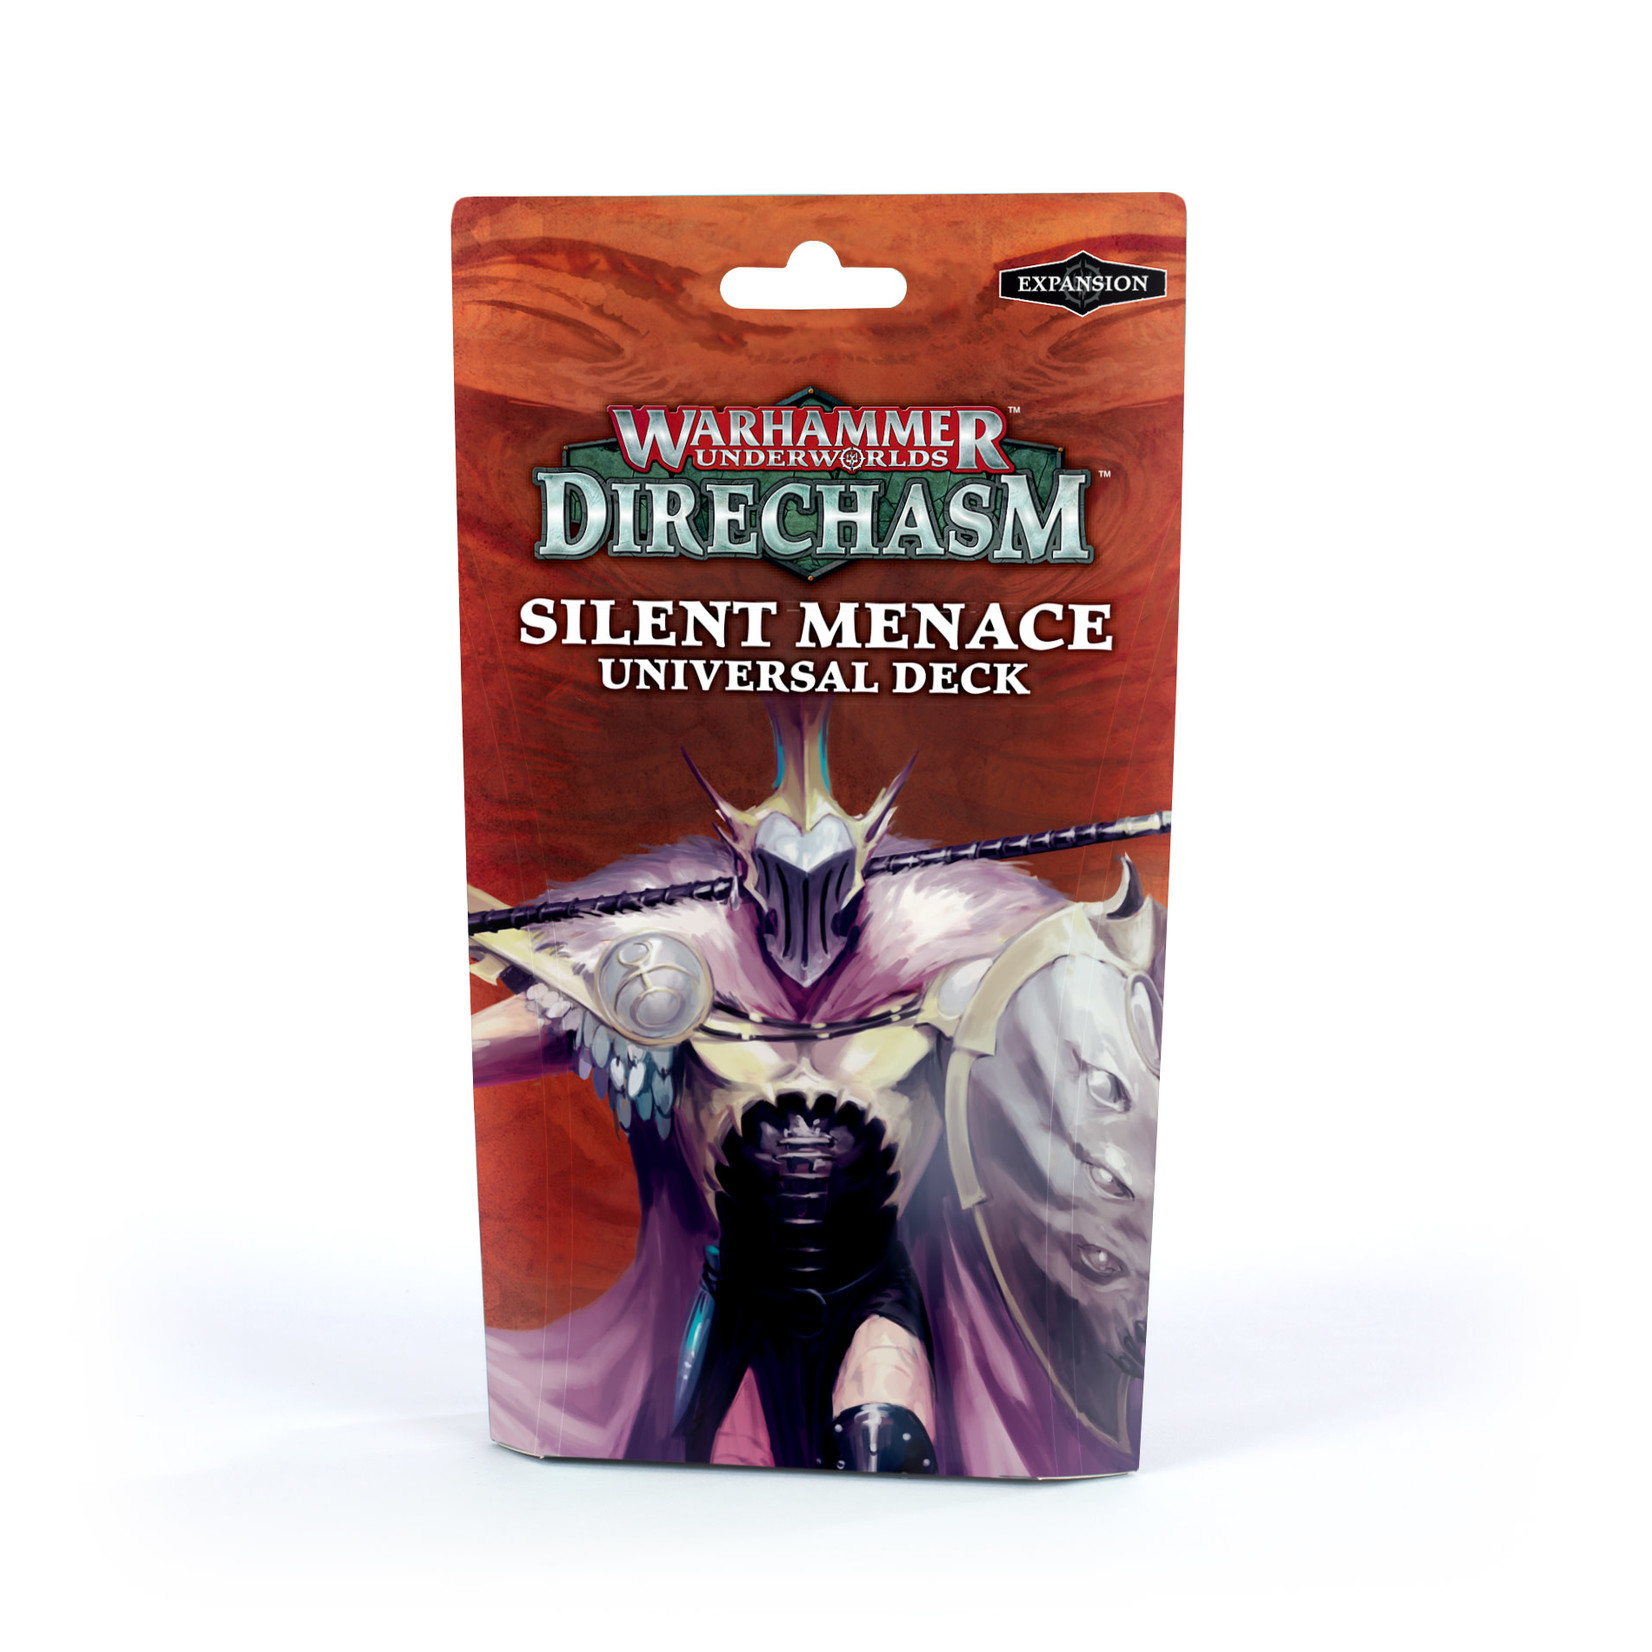 Warhammer Underworlds: Direchasms - Silent Menace Universal Deck